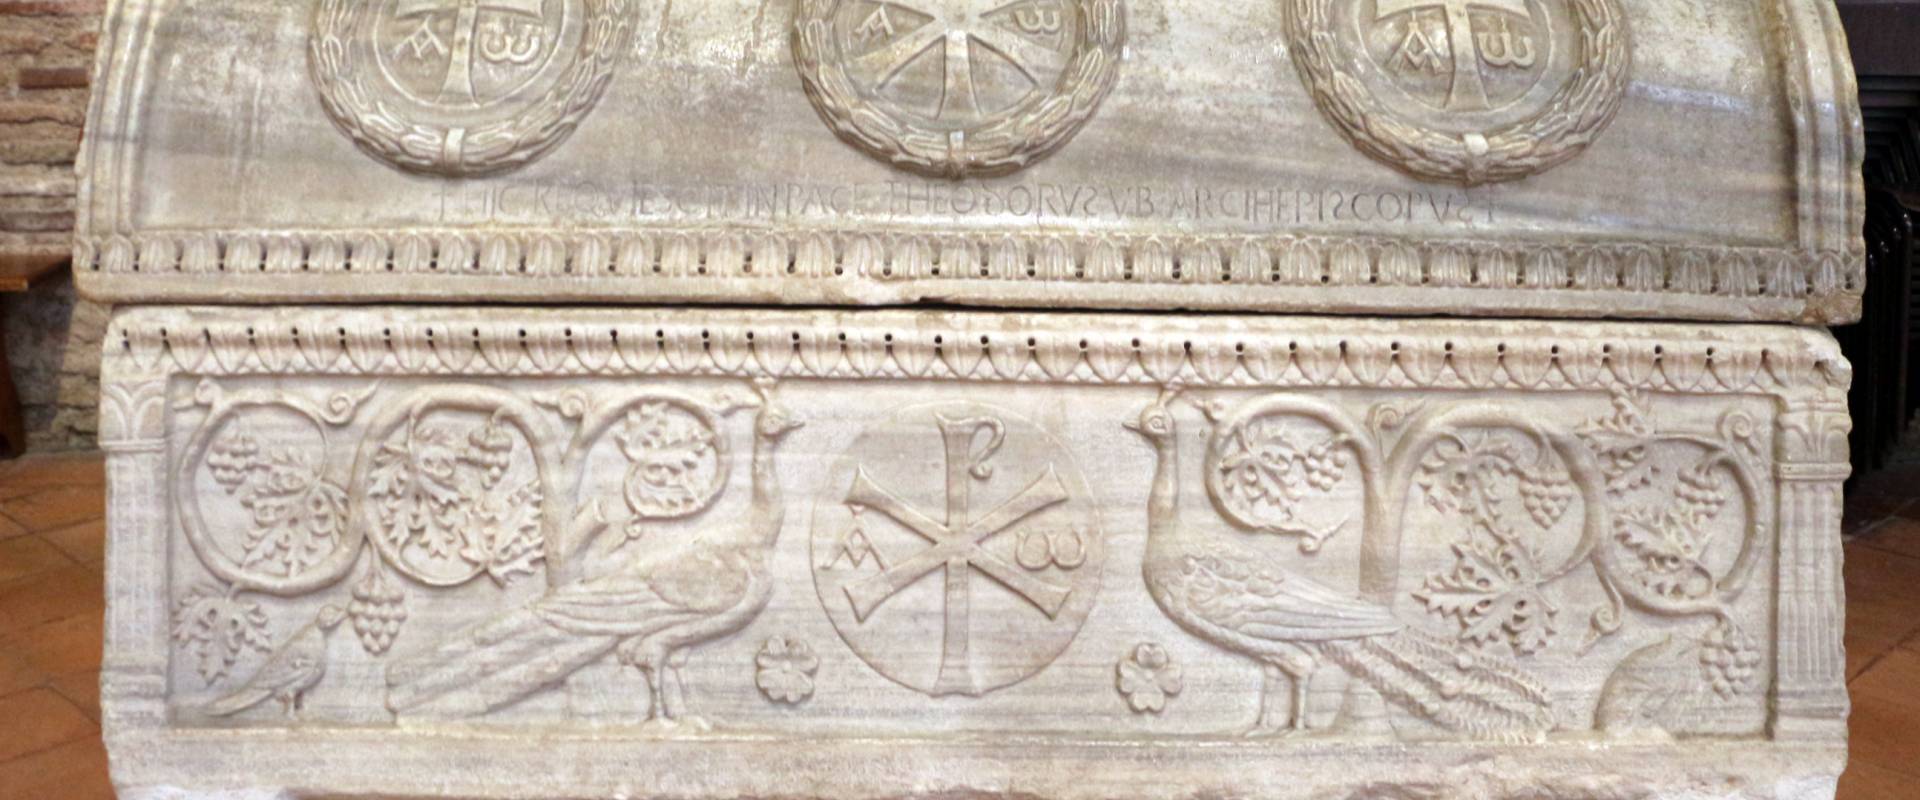 Sant'apollinare in classe, interno, sarcofagi ravennati del V secolo ca. 06 pavoni, colombe e tralci di vite, usato per il vescovo tedoro nel 693 foto di Sailko